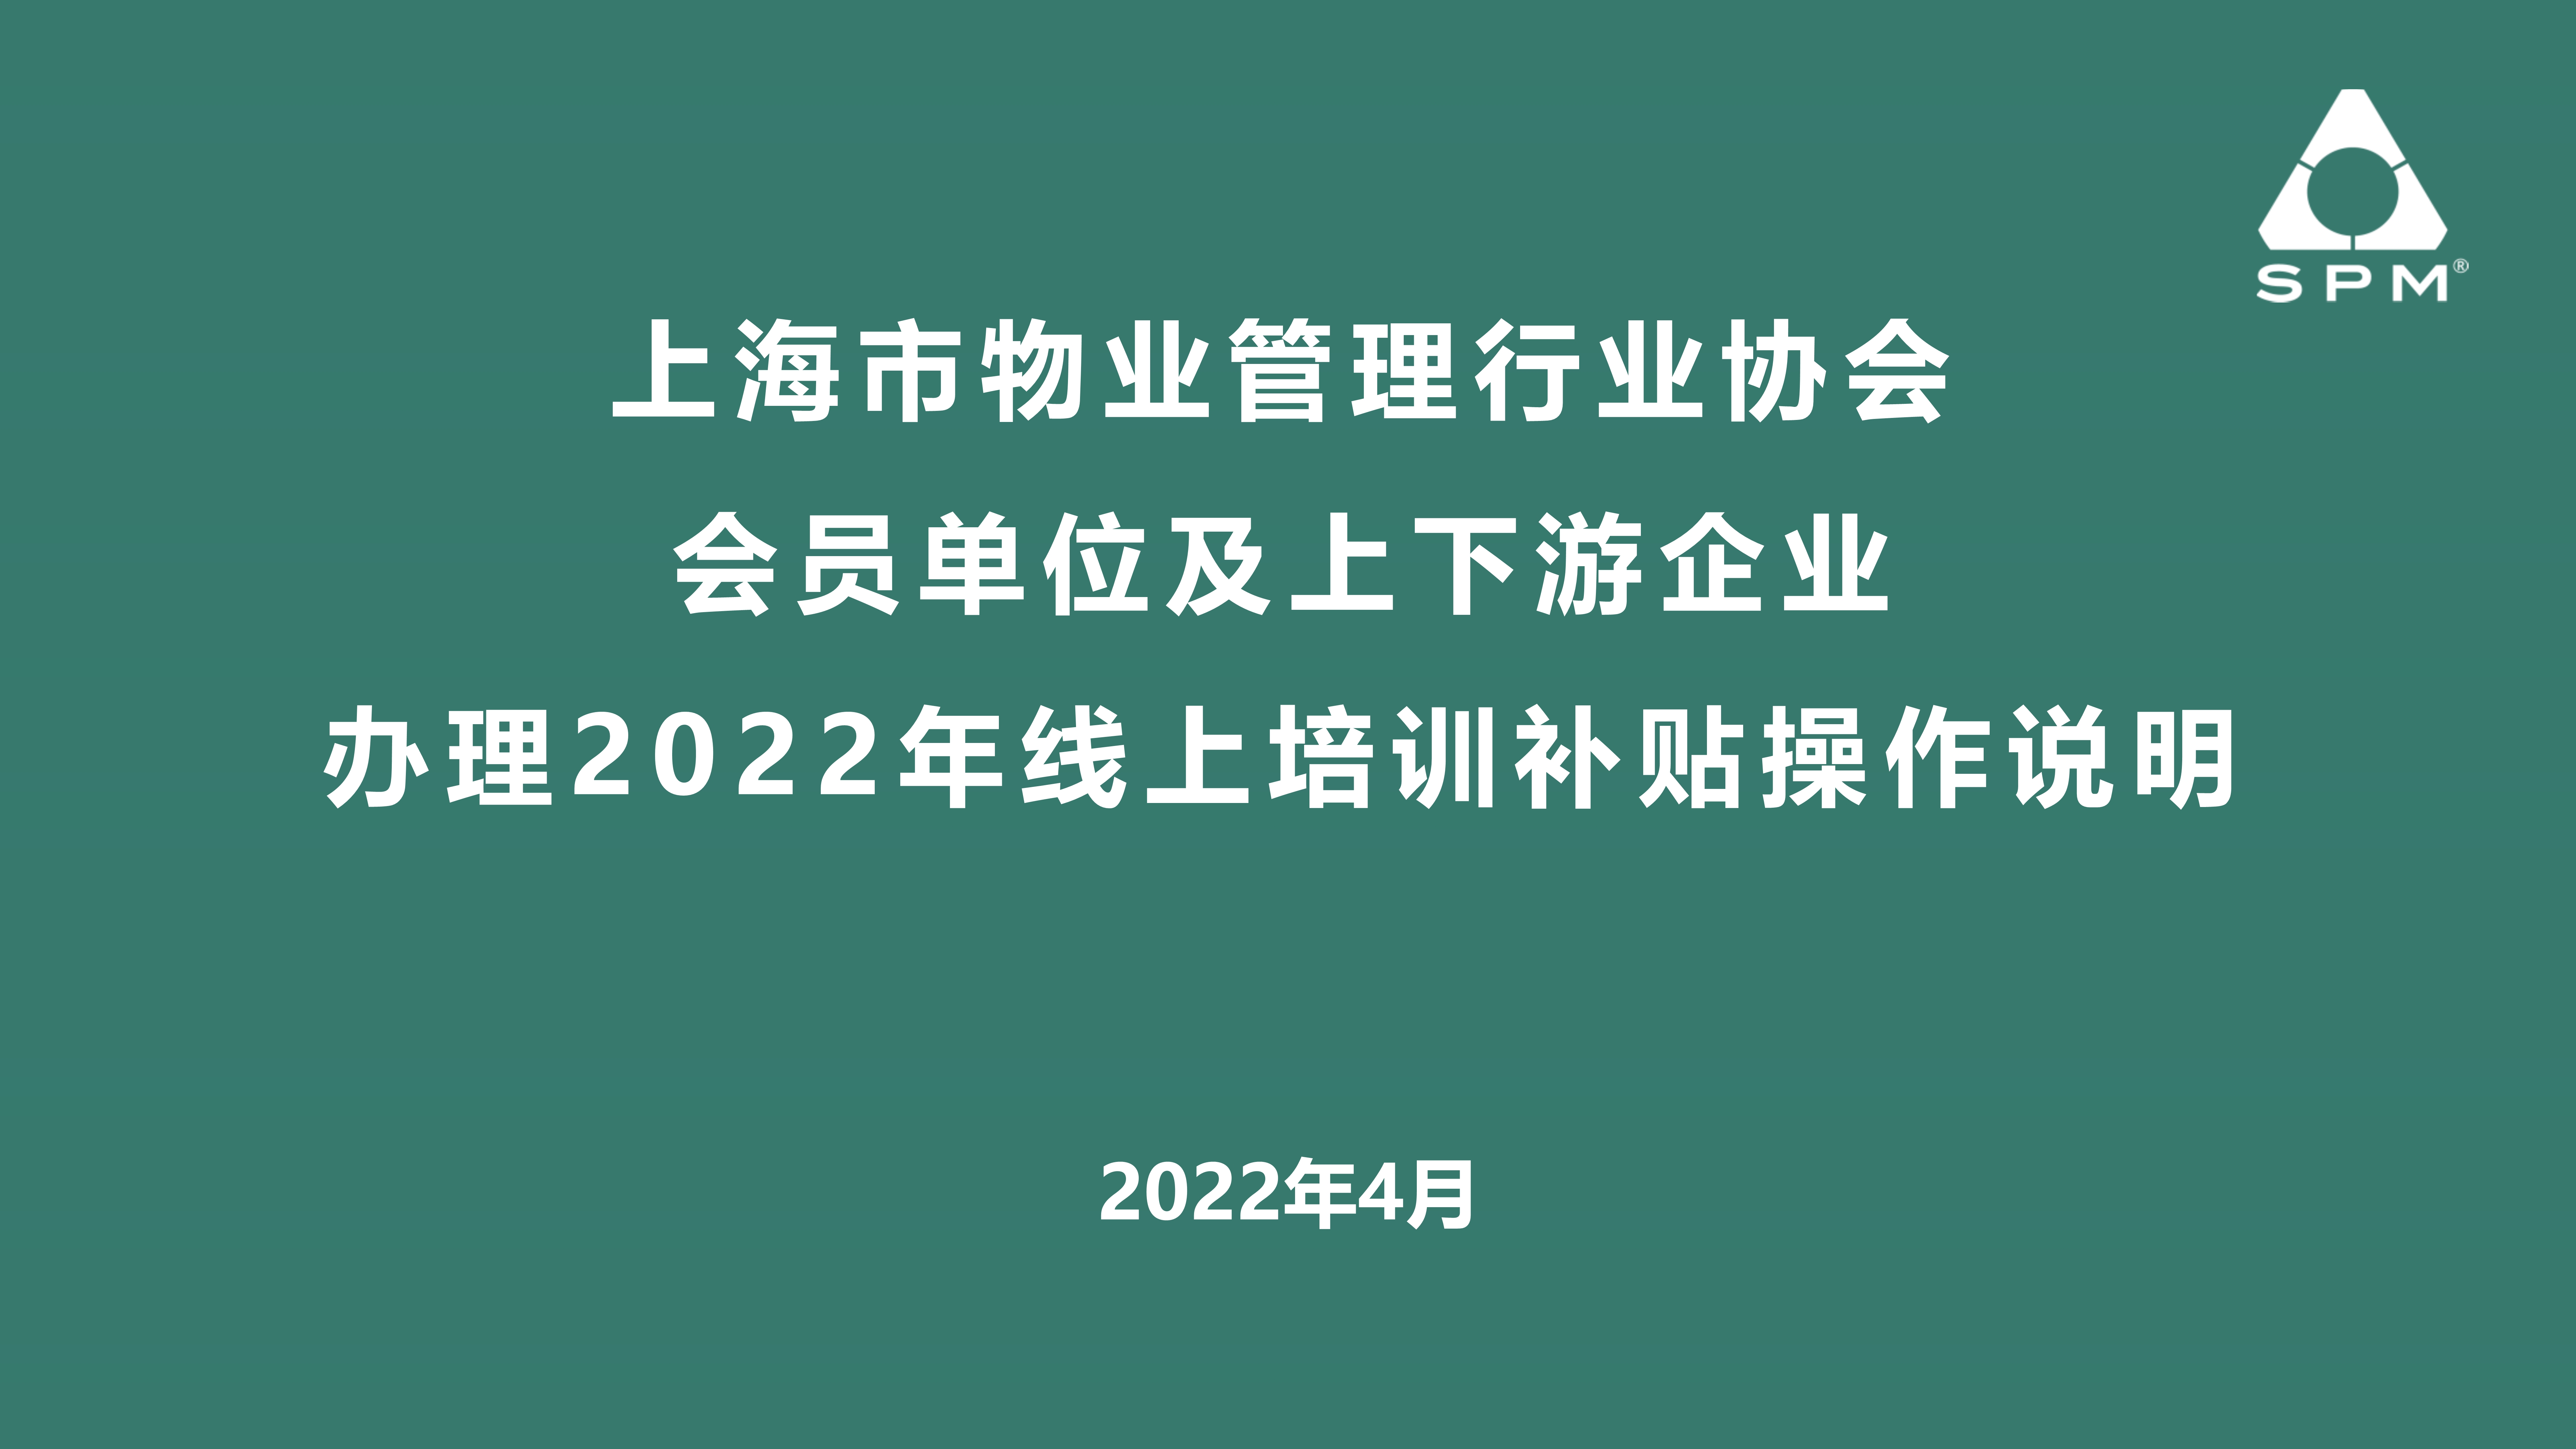 会员单位及上下游企业办理2022年线上培训补贴操作说明 2022_1.jpg